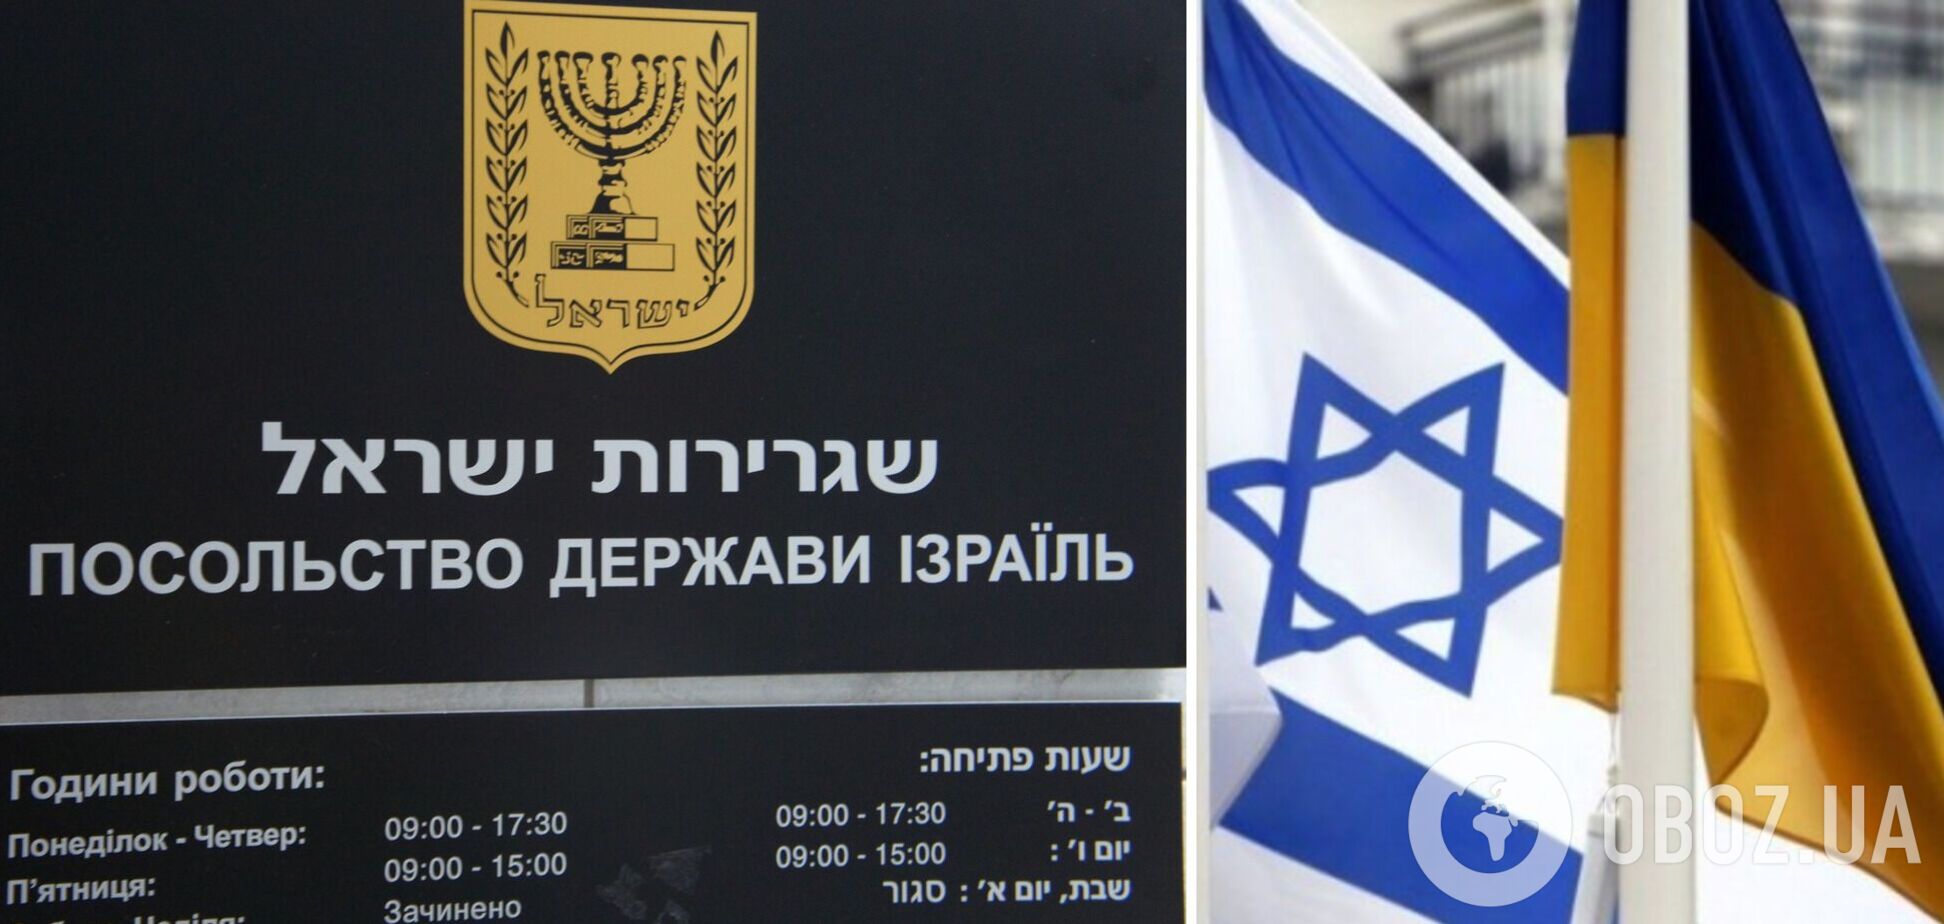 Посольство Израиля возвращается в Киев: названа дата